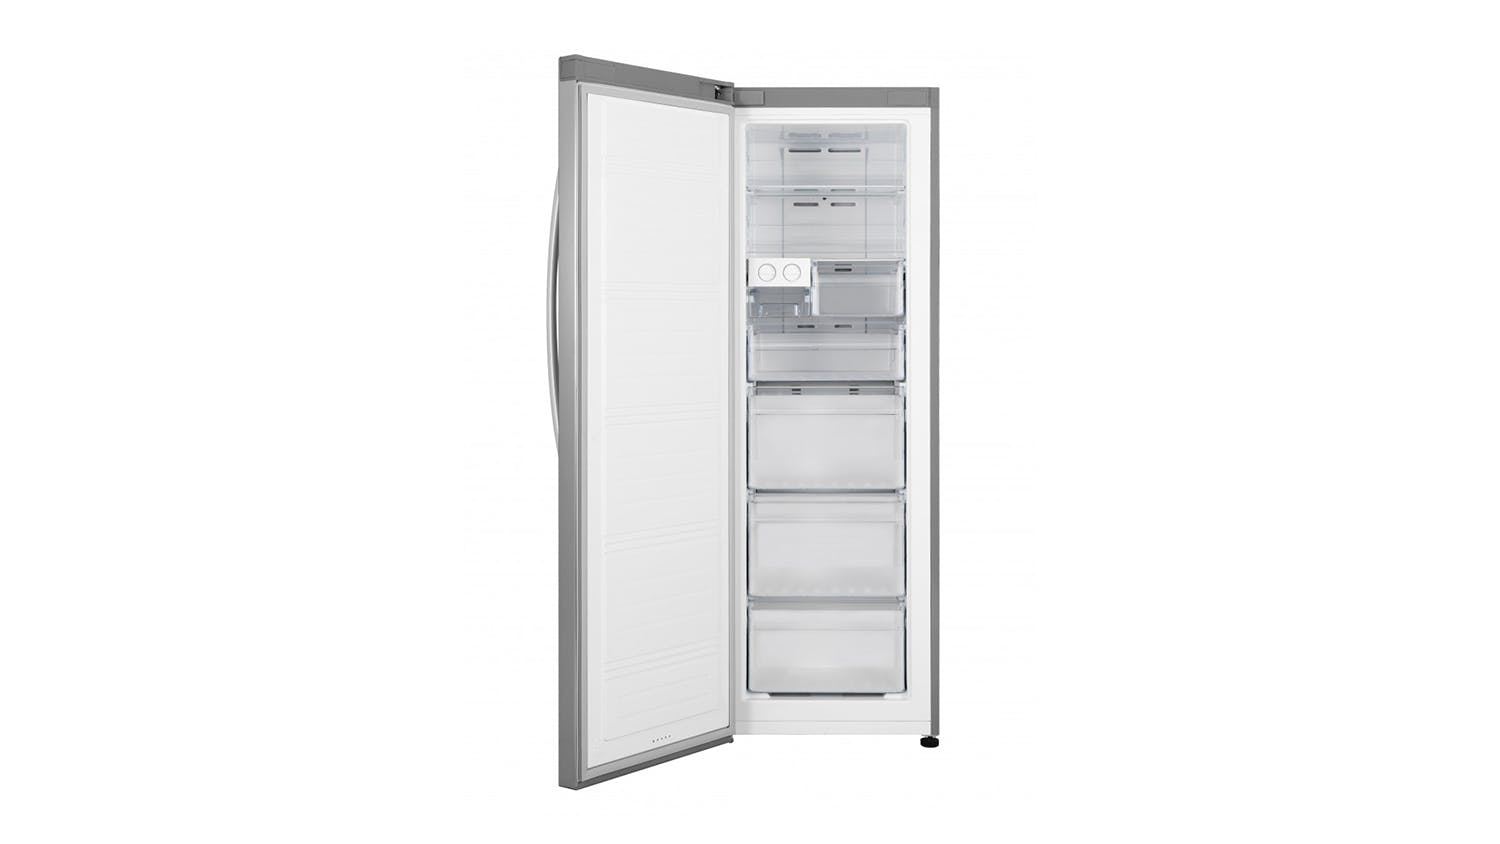 Acqua 280L Single Door Vertical Freezer - Stainless Steel